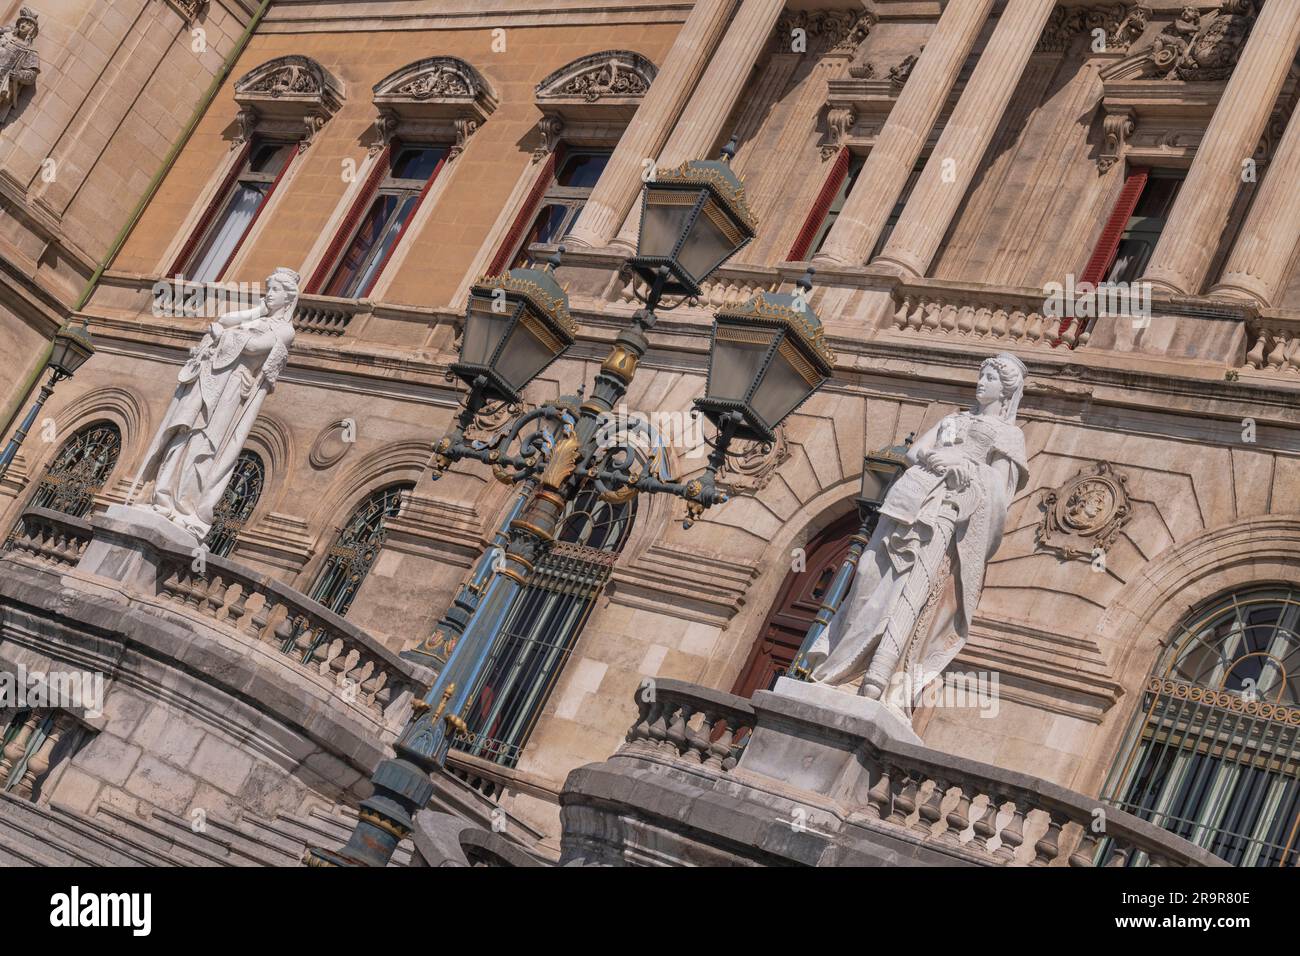 Espagne, pays Basque, Bilbao, Hôtel de ville de style baroque datant de 1892, détail de la façade avec des statues en marbre représentant le droit et la justice. Banque D'Images